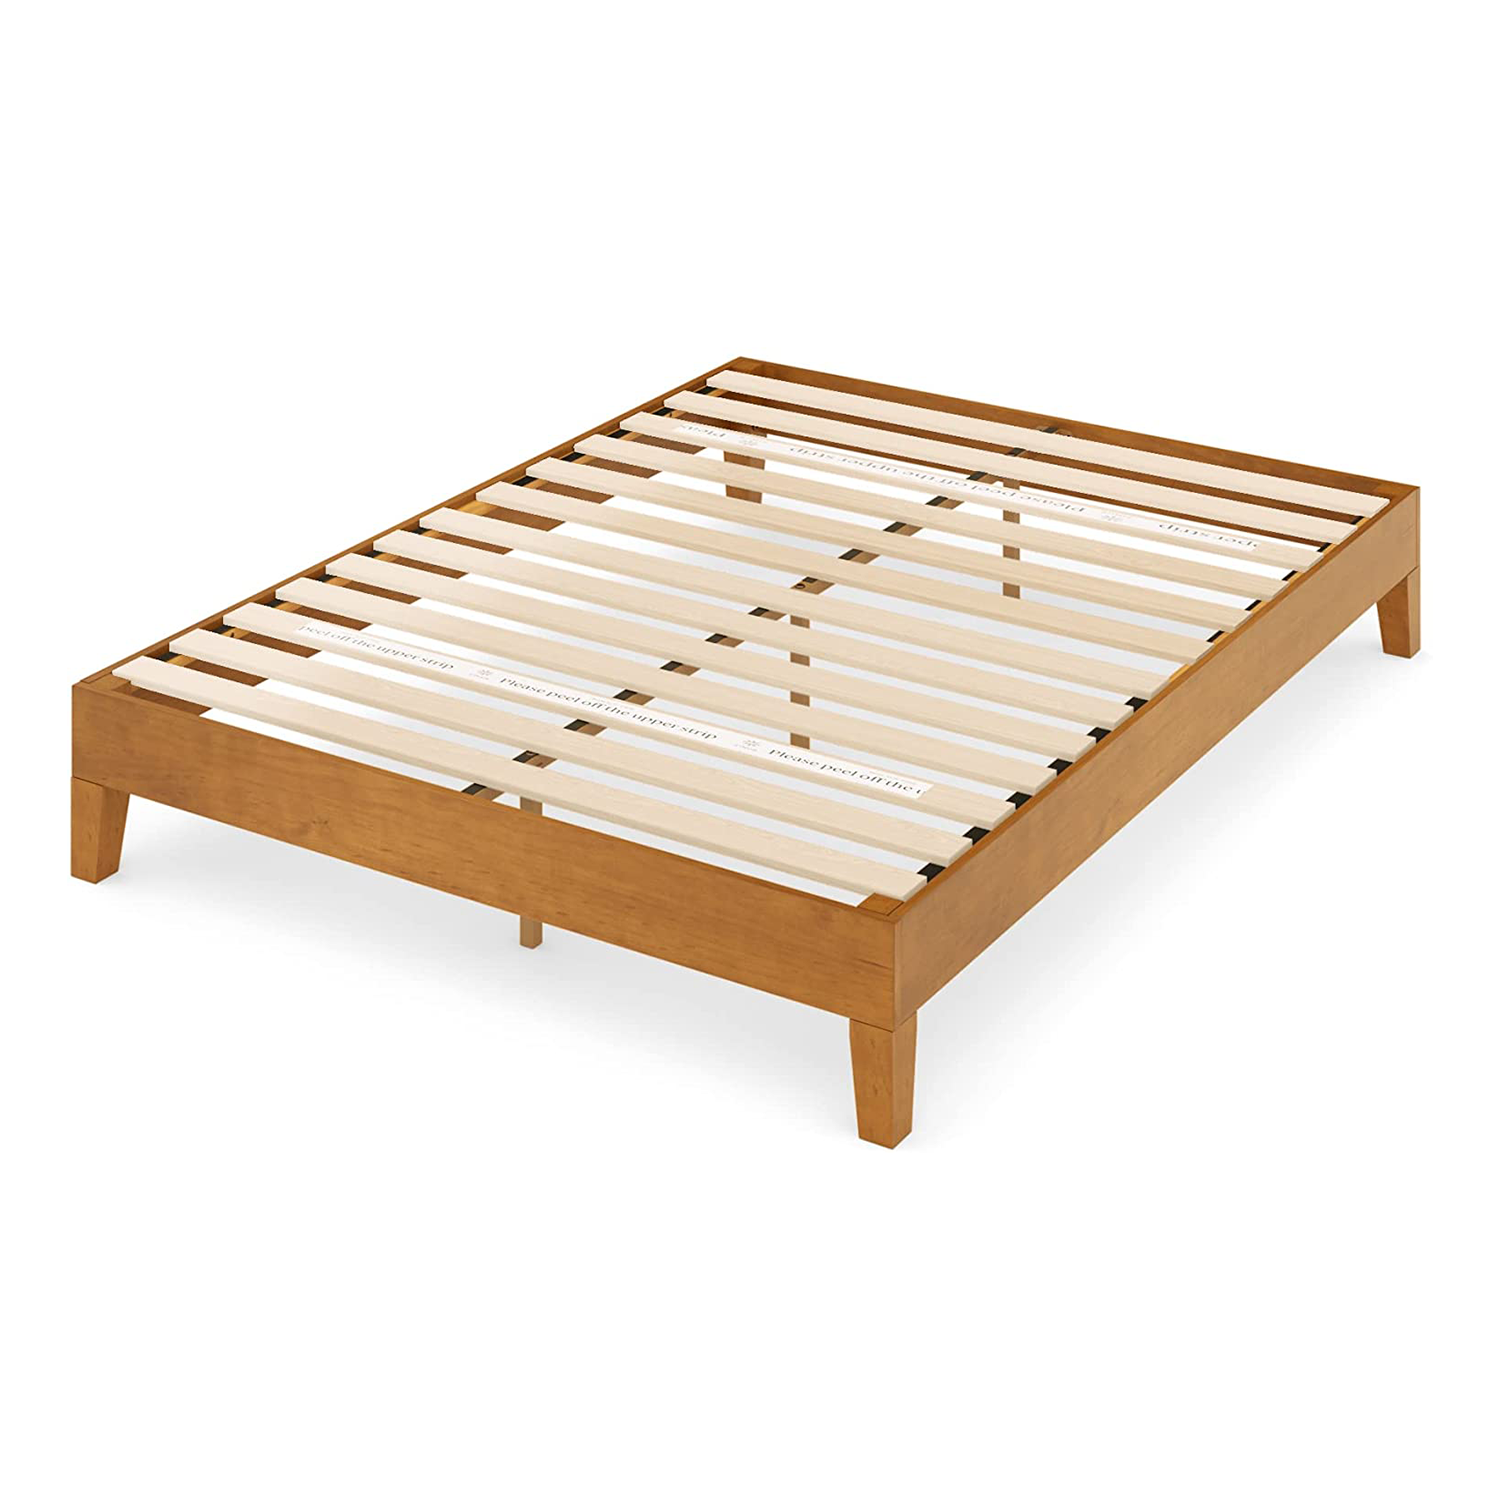 ZINUS Moiz Deluxe Wood Platform Bed Frame